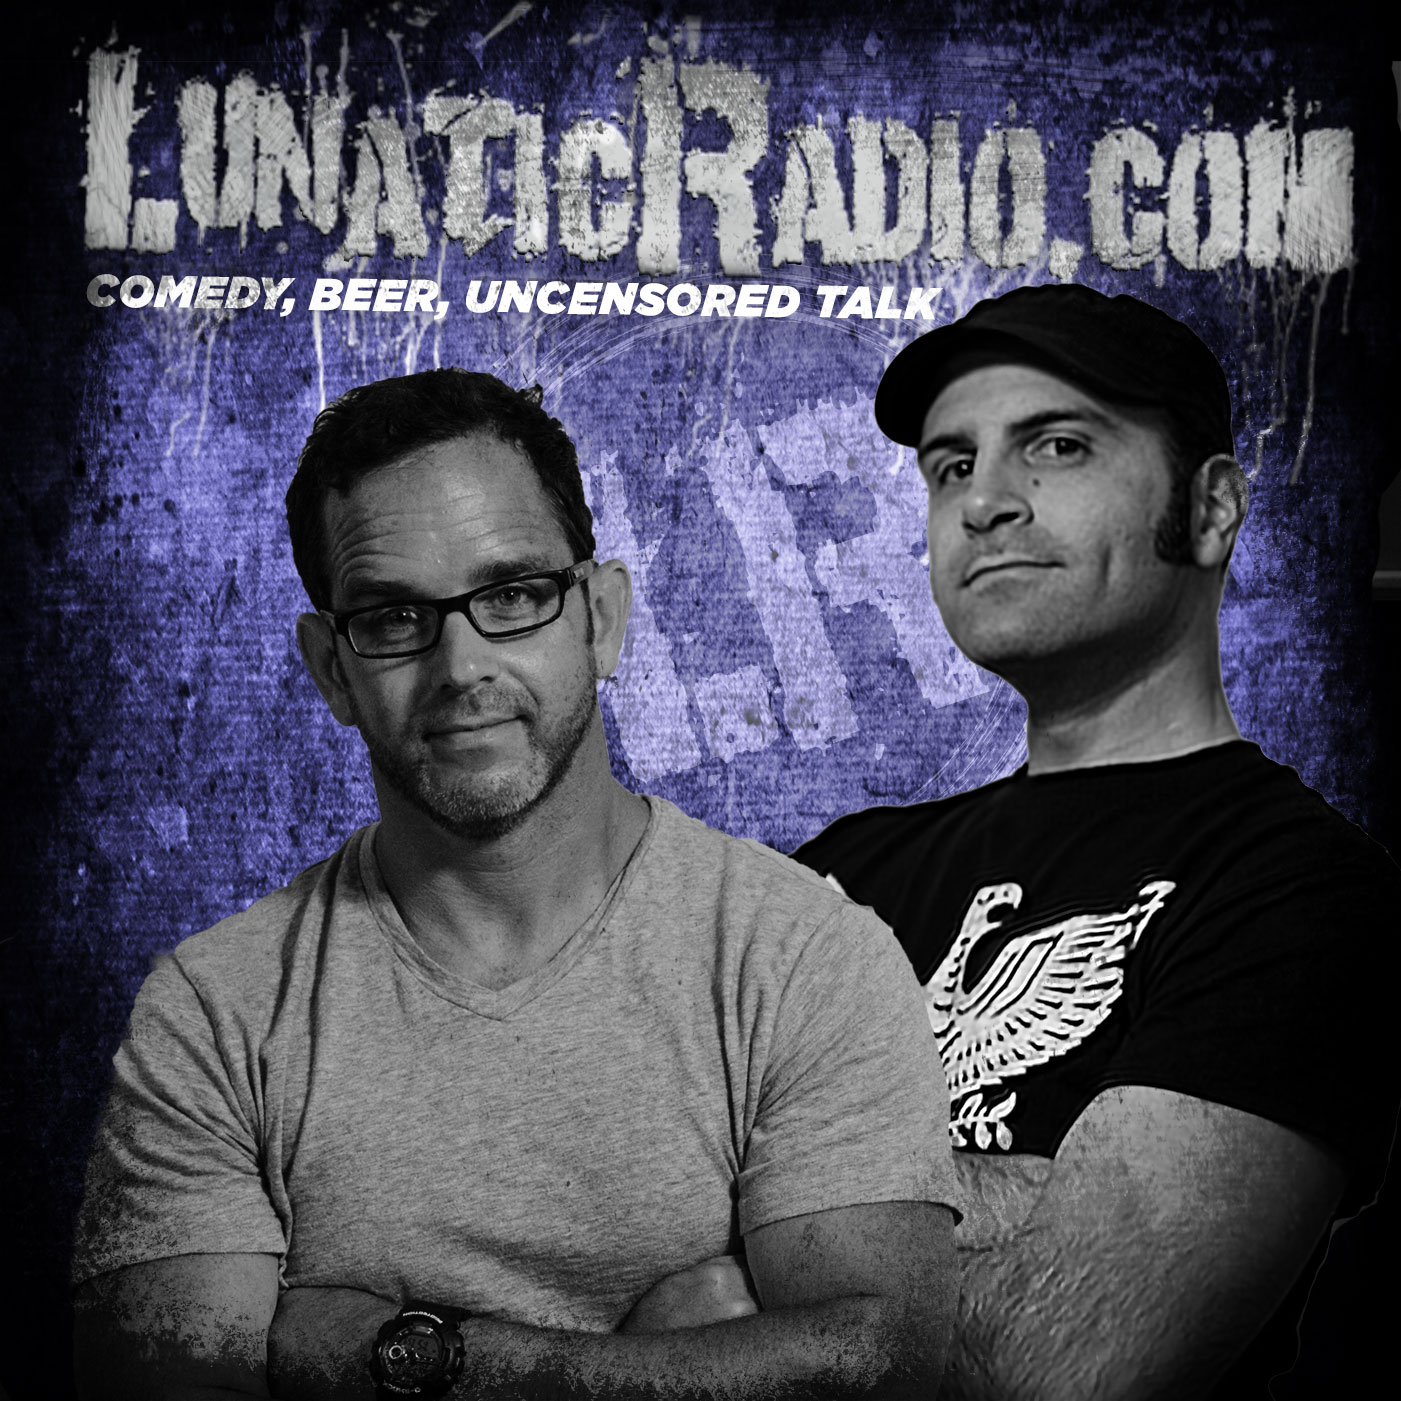 The LunaticRadio.com Show